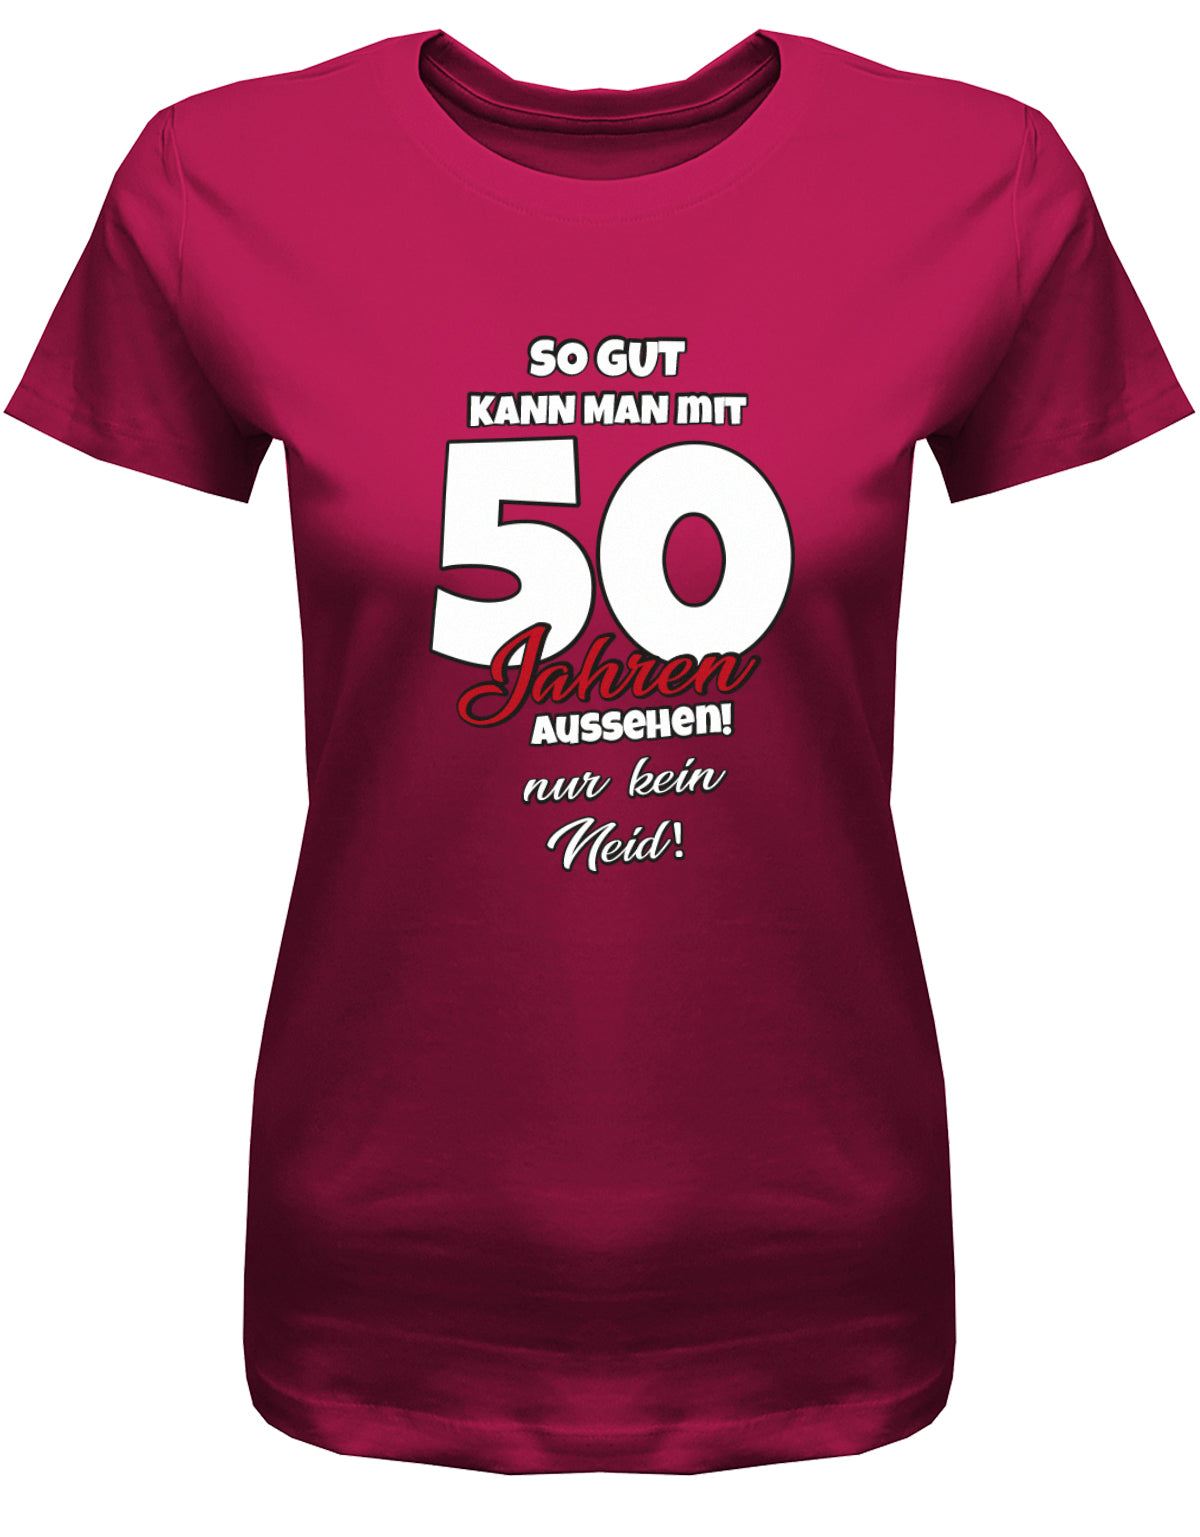 Lustiges T-Shirt zum 50 Geburtstag für die Frau Bedruckt mit So gut kann man mit 50 Jahren aussehen! Nur kein Neid! Sorbet